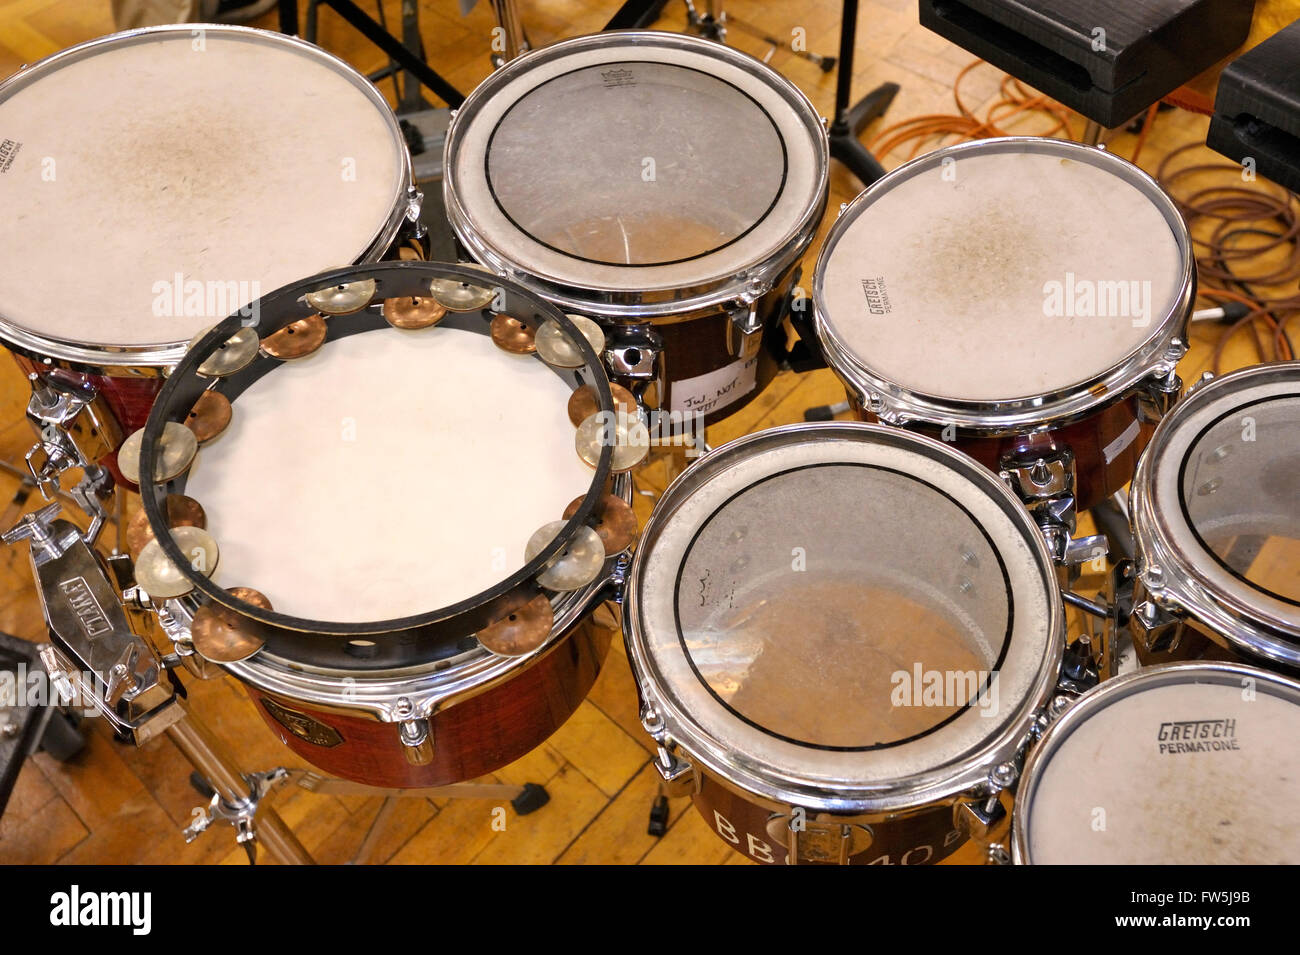 7 tom-tom, petite main-drums originaires de la musique latino-américaine, utilisé ici dans l'orchestre symphonique moderne par Harrison Birtwhistle, dans son masque d'Orphée (pour la BBC Proms 2009). Banque D'Images